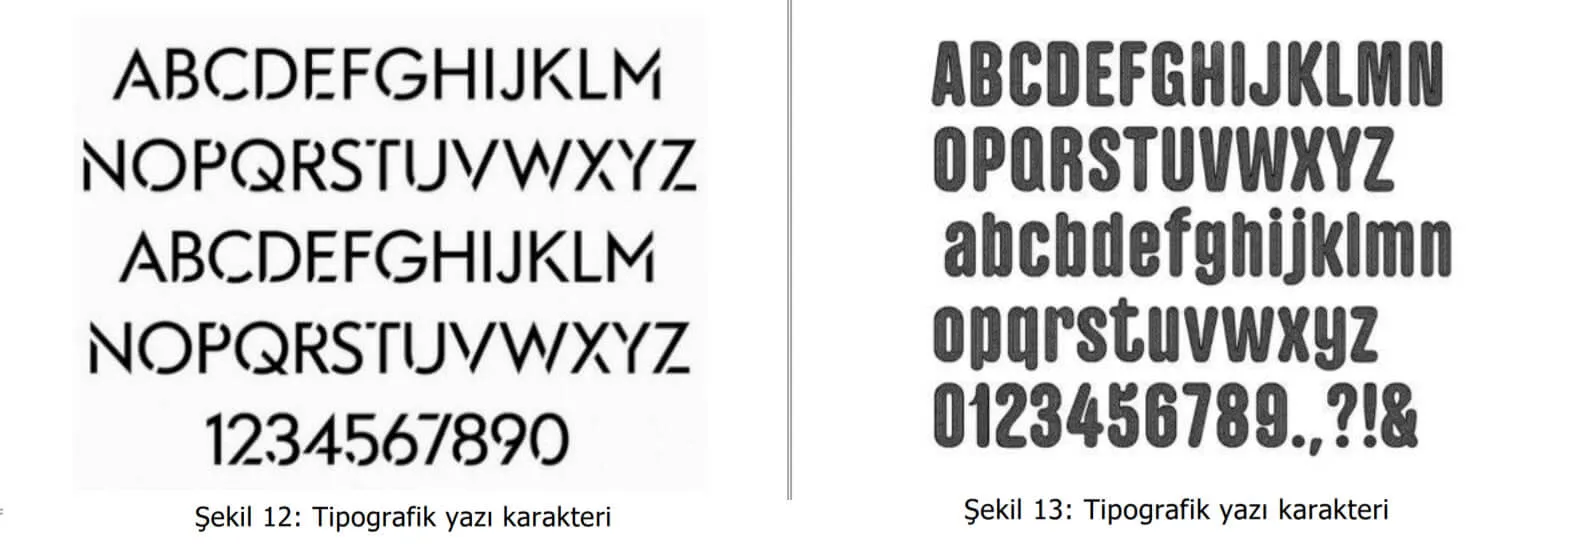 tipografik yazı karakter örnekleri-zonguldak patent